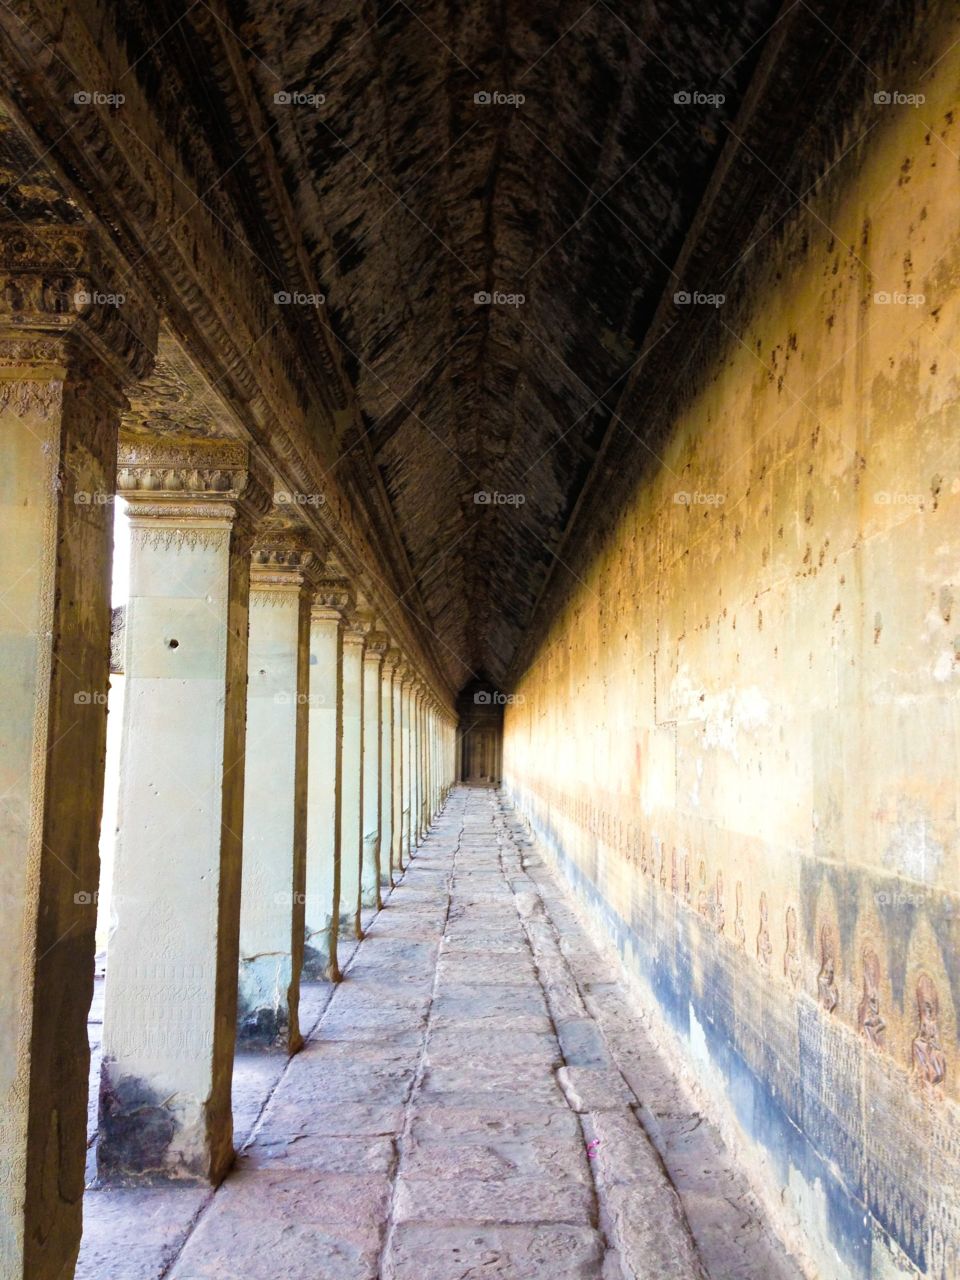 Hallway . Hallway in Angkor Wat, Cambodia